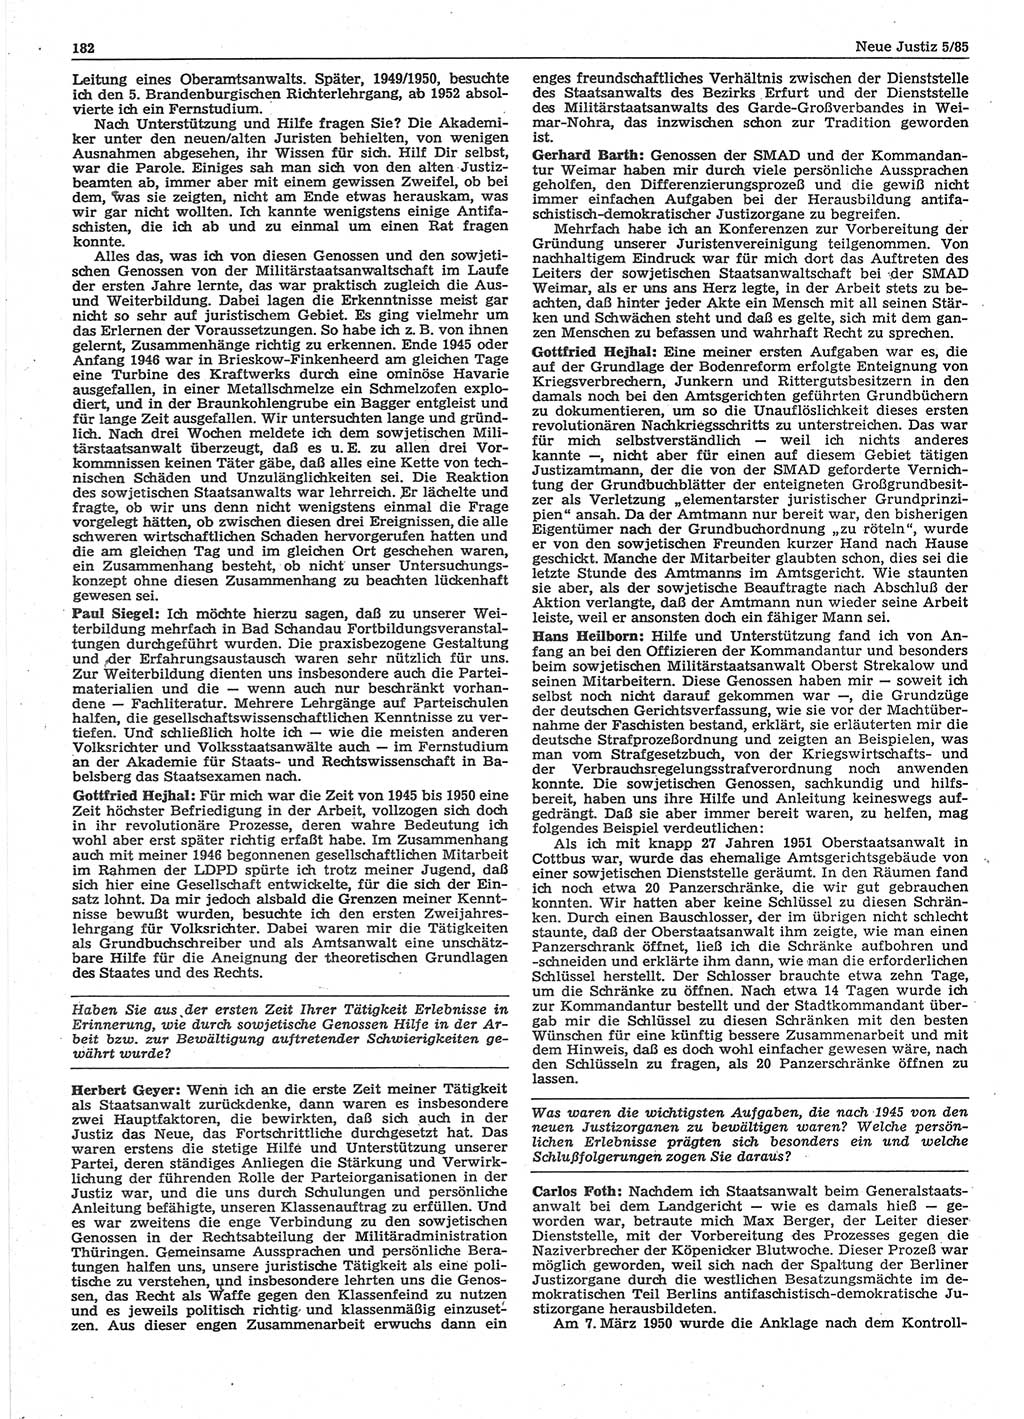 Neue Justiz (NJ), Zeitschrift für sozialistisches Recht und Gesetzlichkeit [Deutsche Demokratische Republik (DDR)], 39. Jahrgang 1985, Seite 182 (NJ DDR 1985, S. 182)